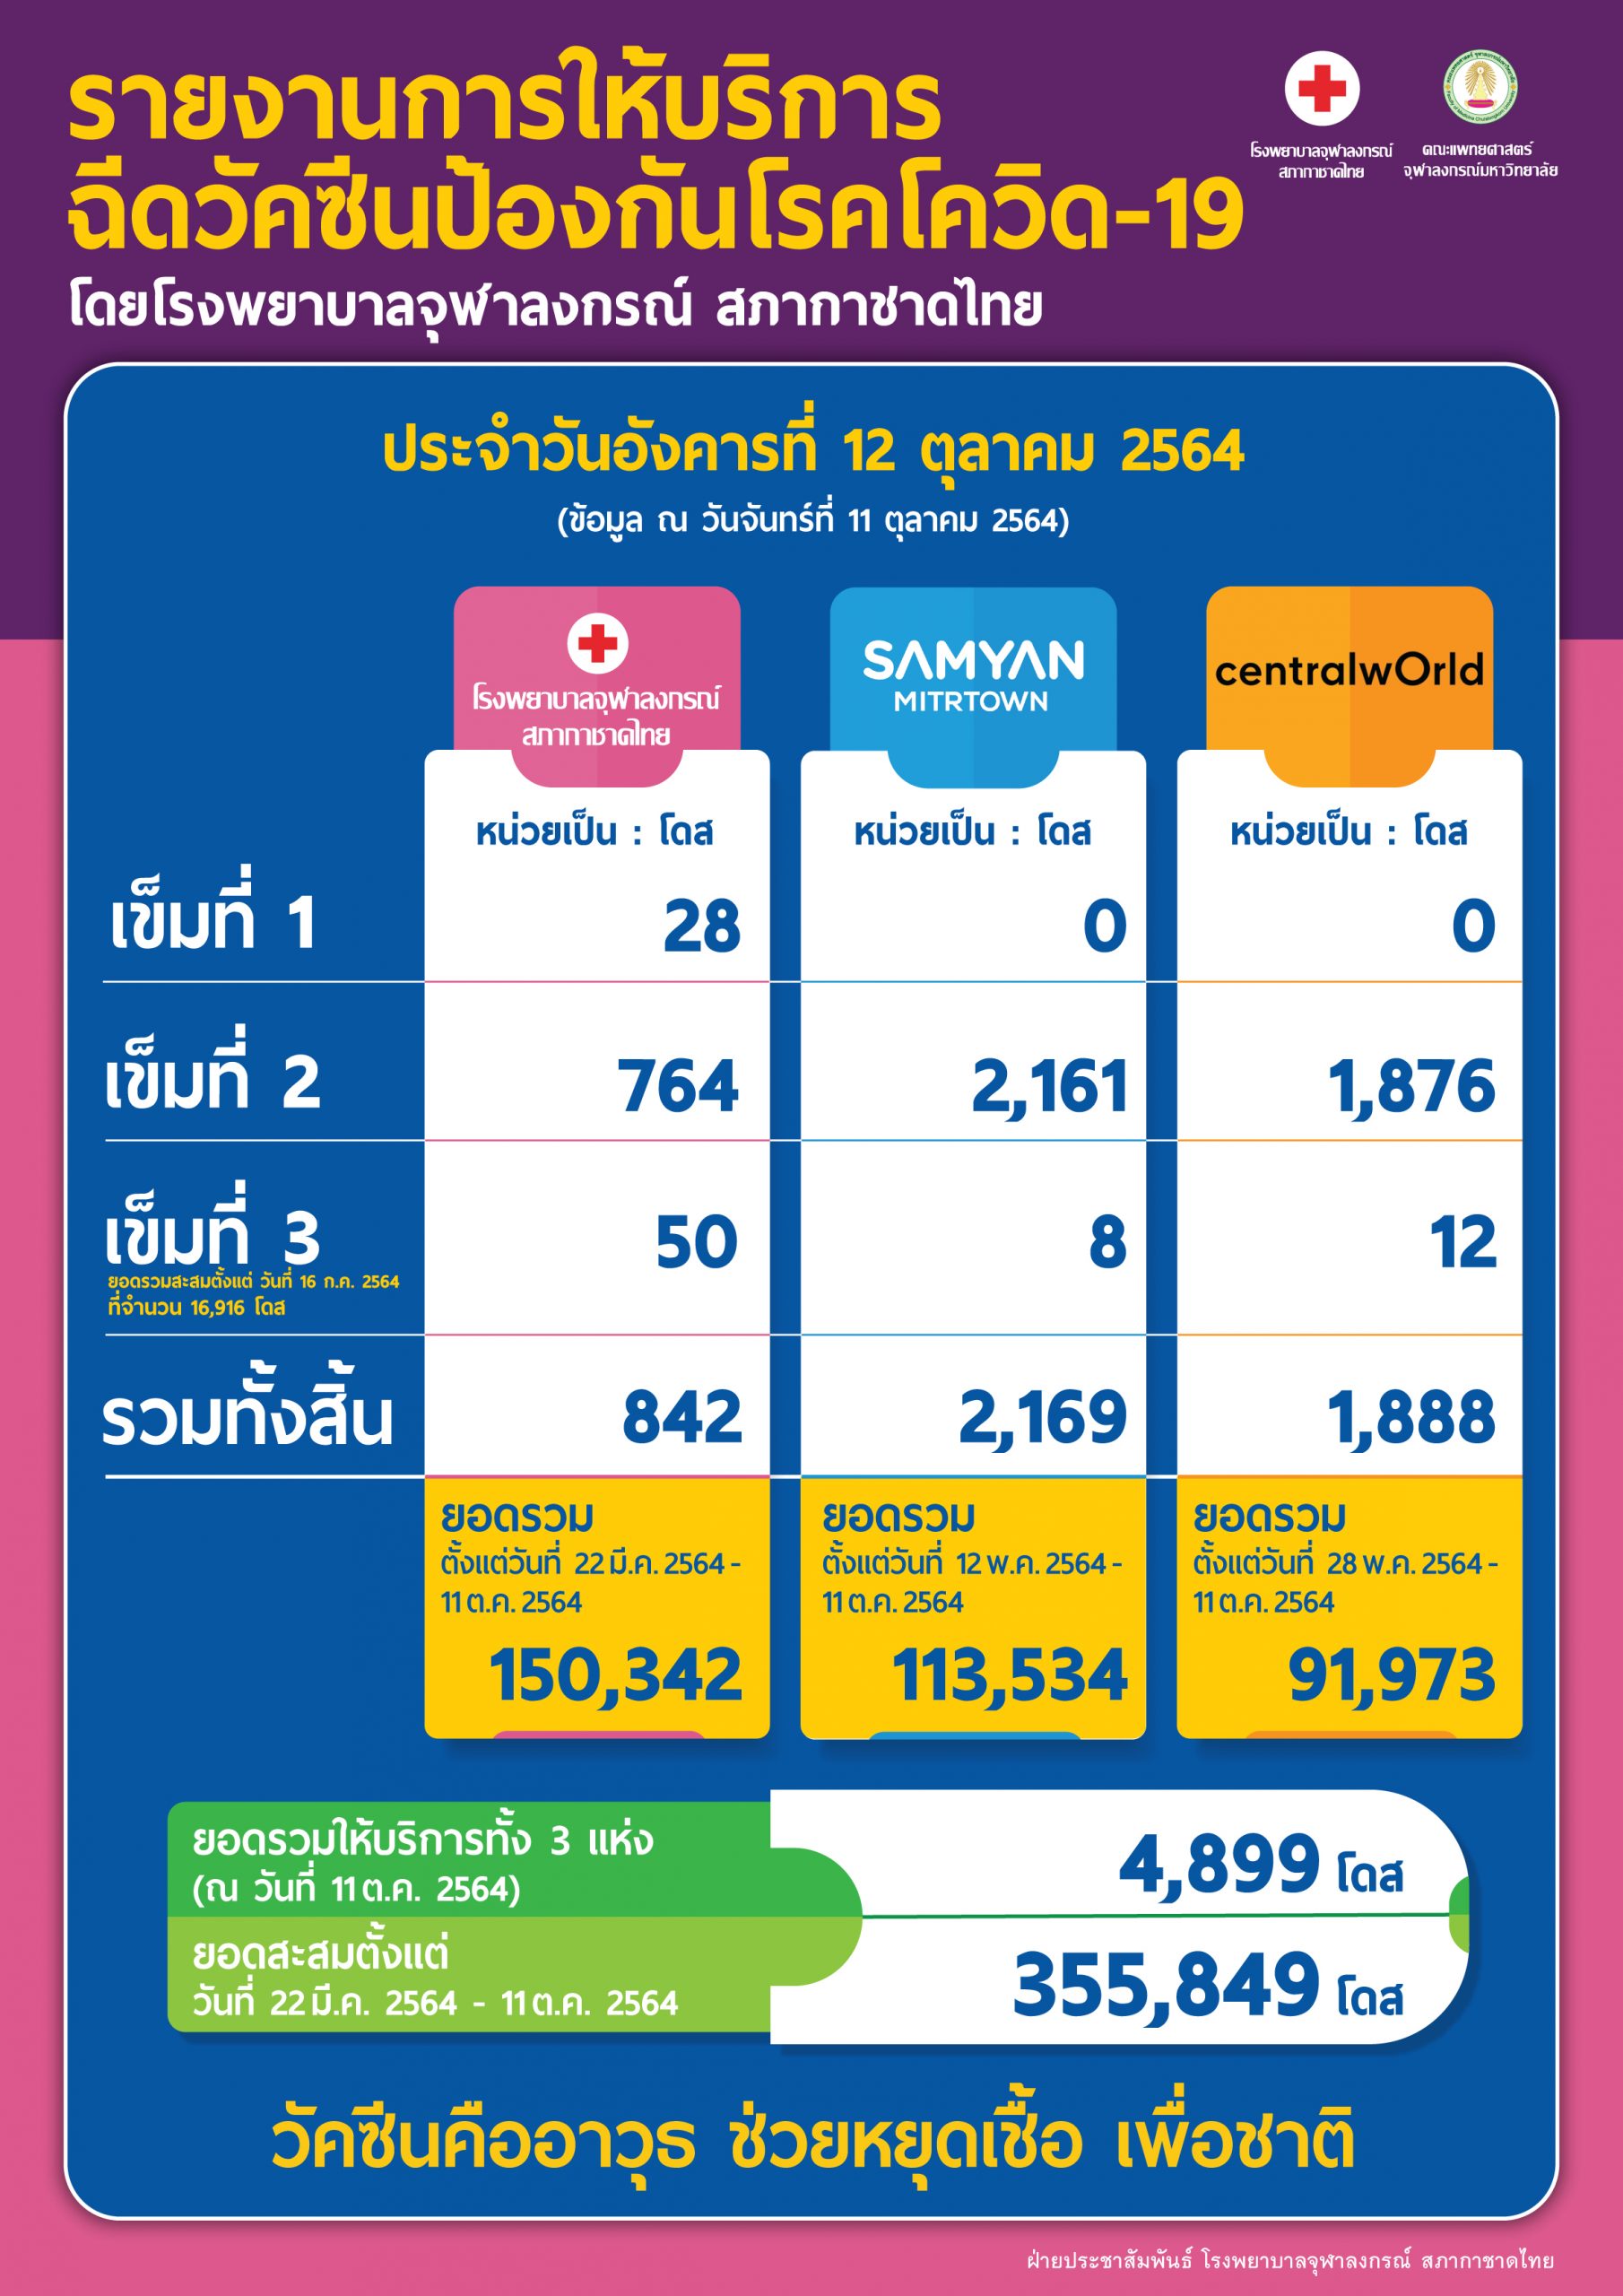 รายงานการให้บริการฉีดวัคซีนป้องกันโรคโควิด-19 โดยโรงพยาบาลจุฬาลงกรณ์ สภากาชาดไทย ประจำวันอังคารที่ 12 ตุลาคม 2564